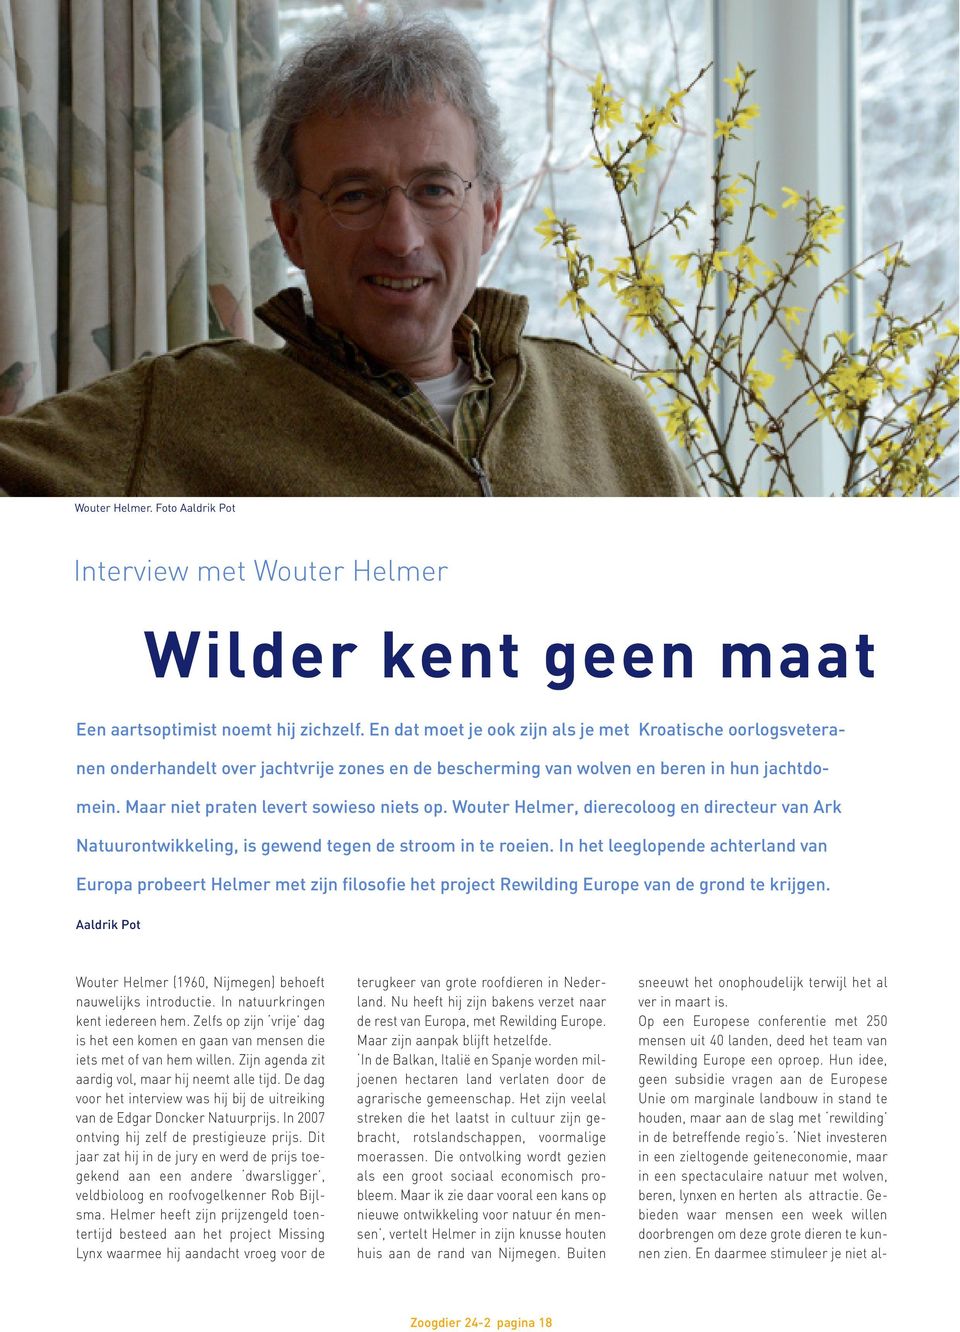 Wouter Helmer, dierecoloog en directeur van Ark Natuurontwikkeling, is gewend tegen de stroom in te roeien.